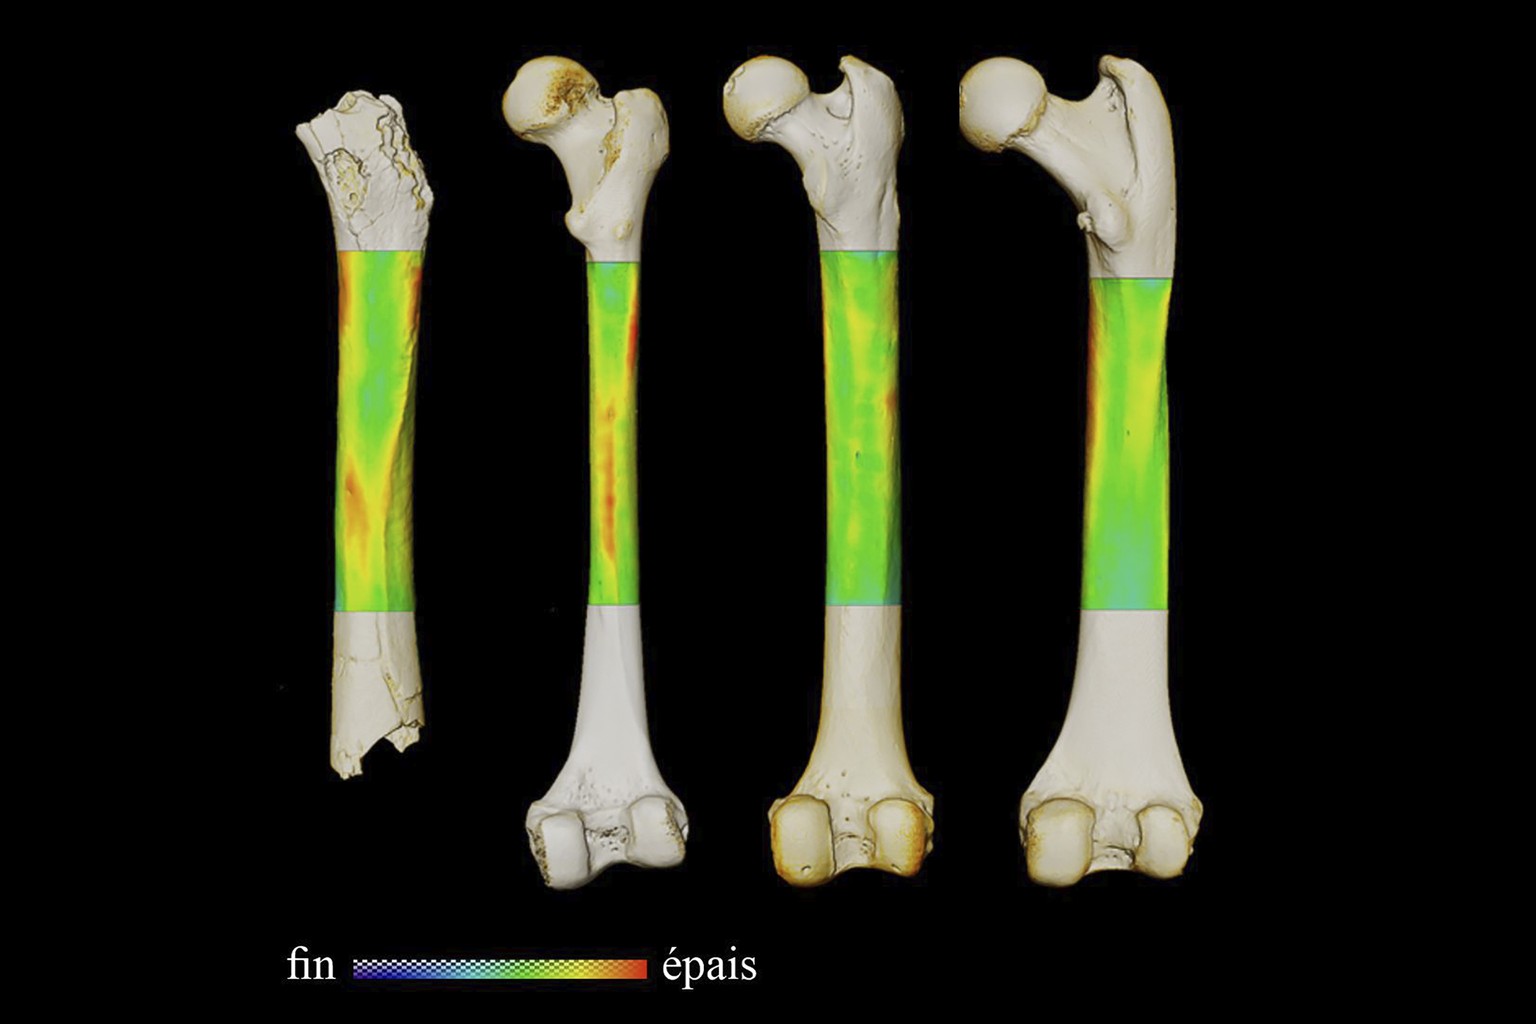 Die Forscher analysierten und verglichen die Oberschenkelknochen von Sahelanthropus tchadensis, eines modernen Menschen, eines Schimpansen und eines Gorillas (v.l.n.r.).